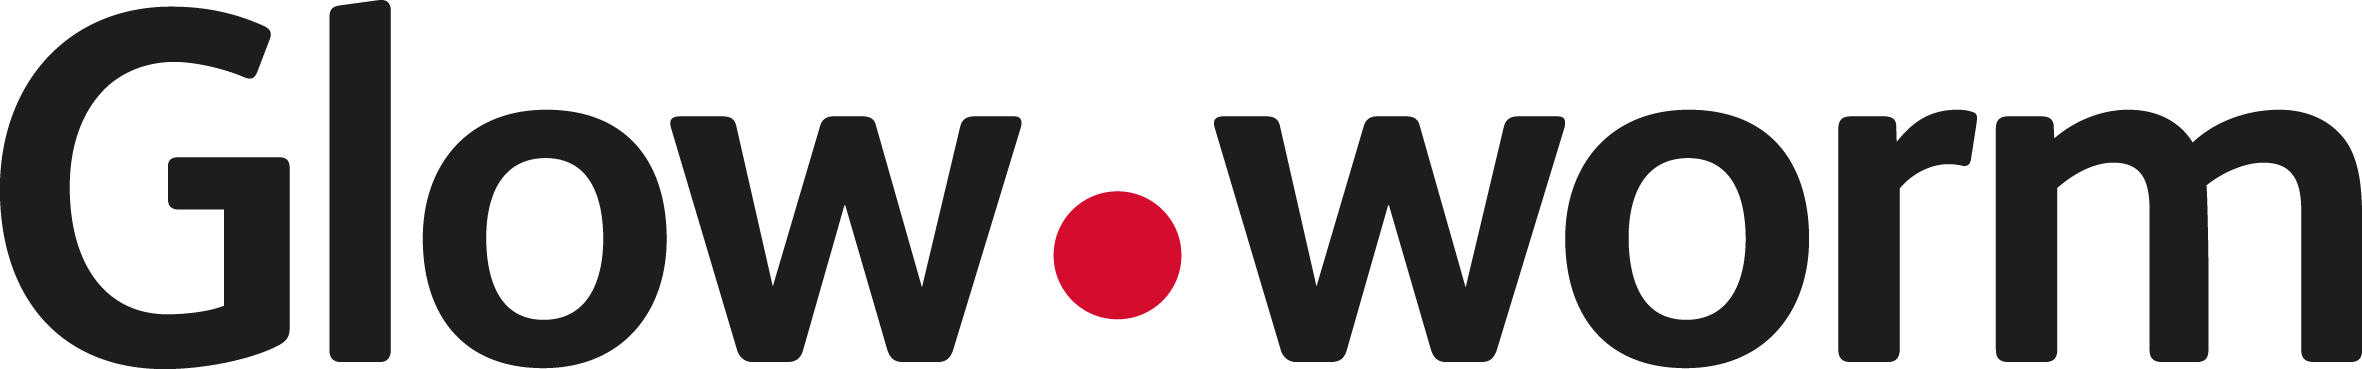 Glow-worm_Logo